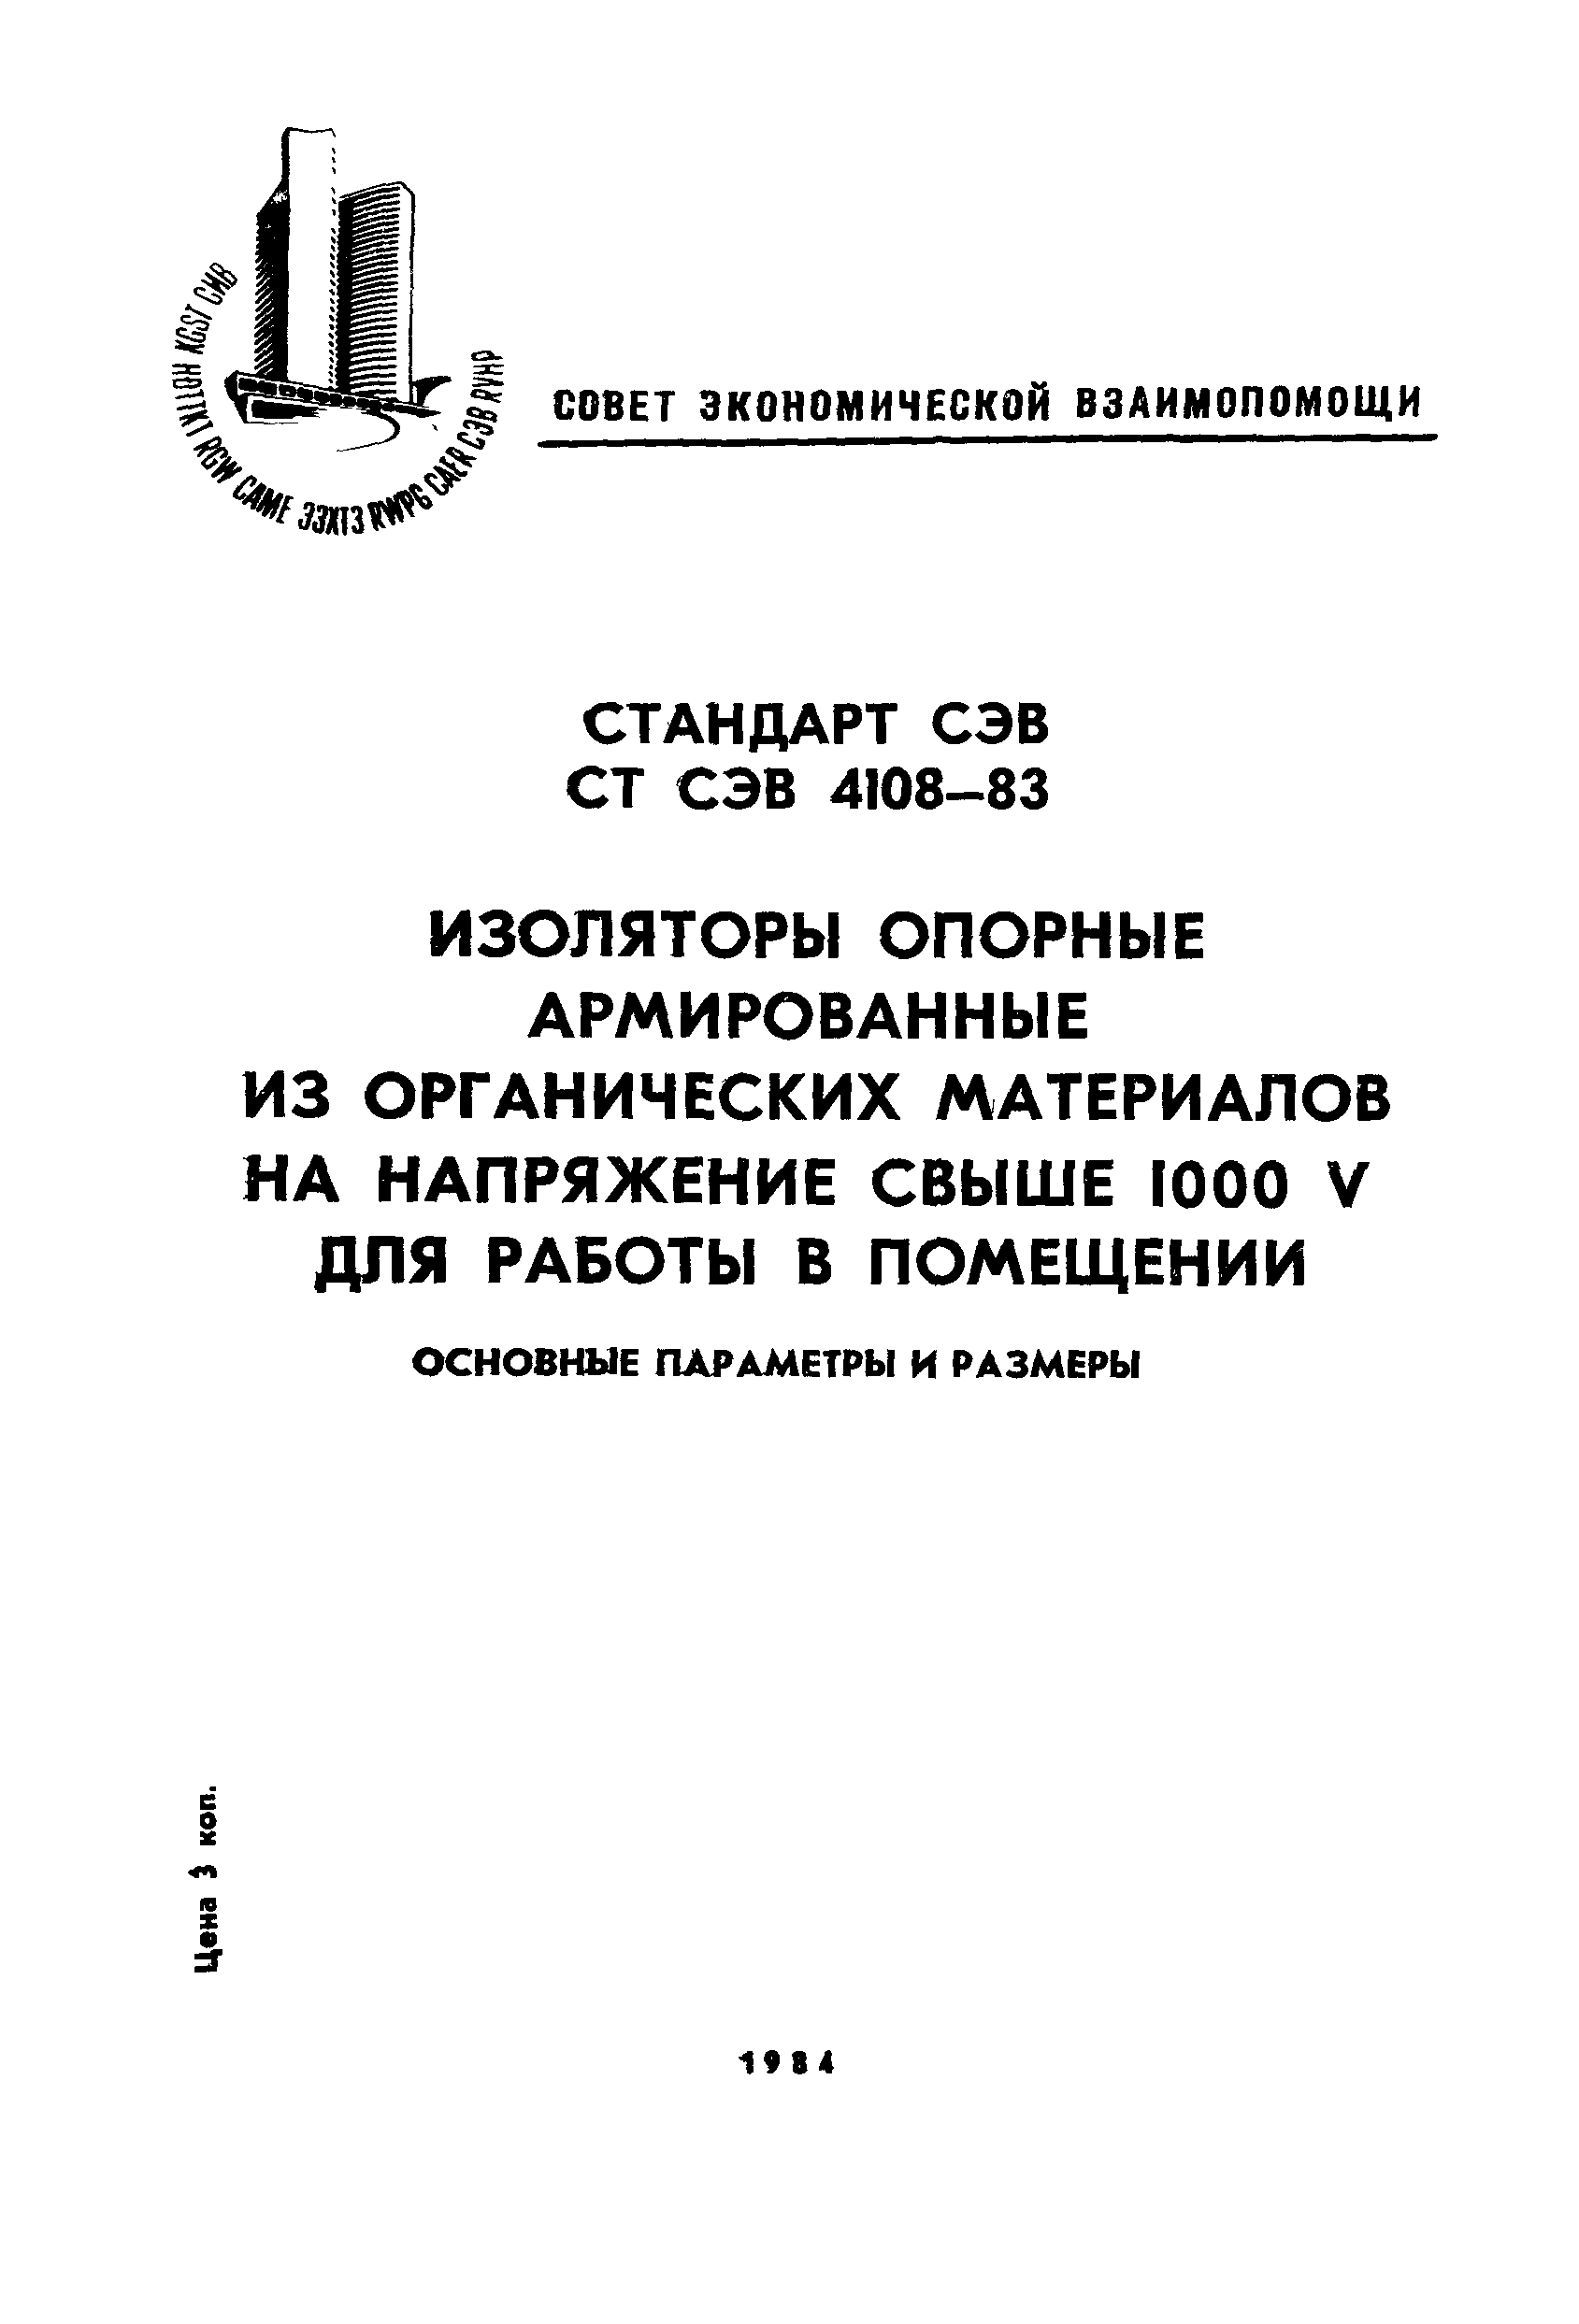 СТ СЭВ 4108-83